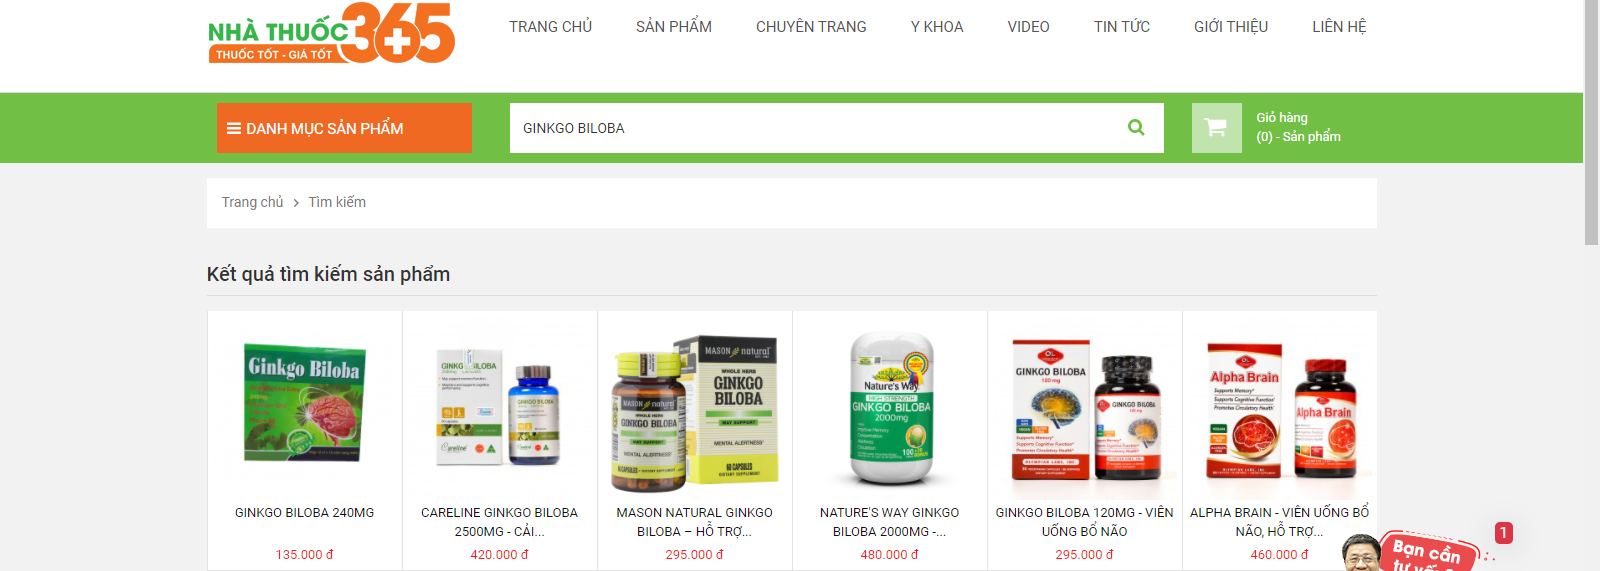 Nhà thuốc 365 - Nhà thuốc trực tuyến uy tín hàng đầu Việt Nam là một trong những dịa chỉ bán các loại Ginkgo Biloba chính hãng